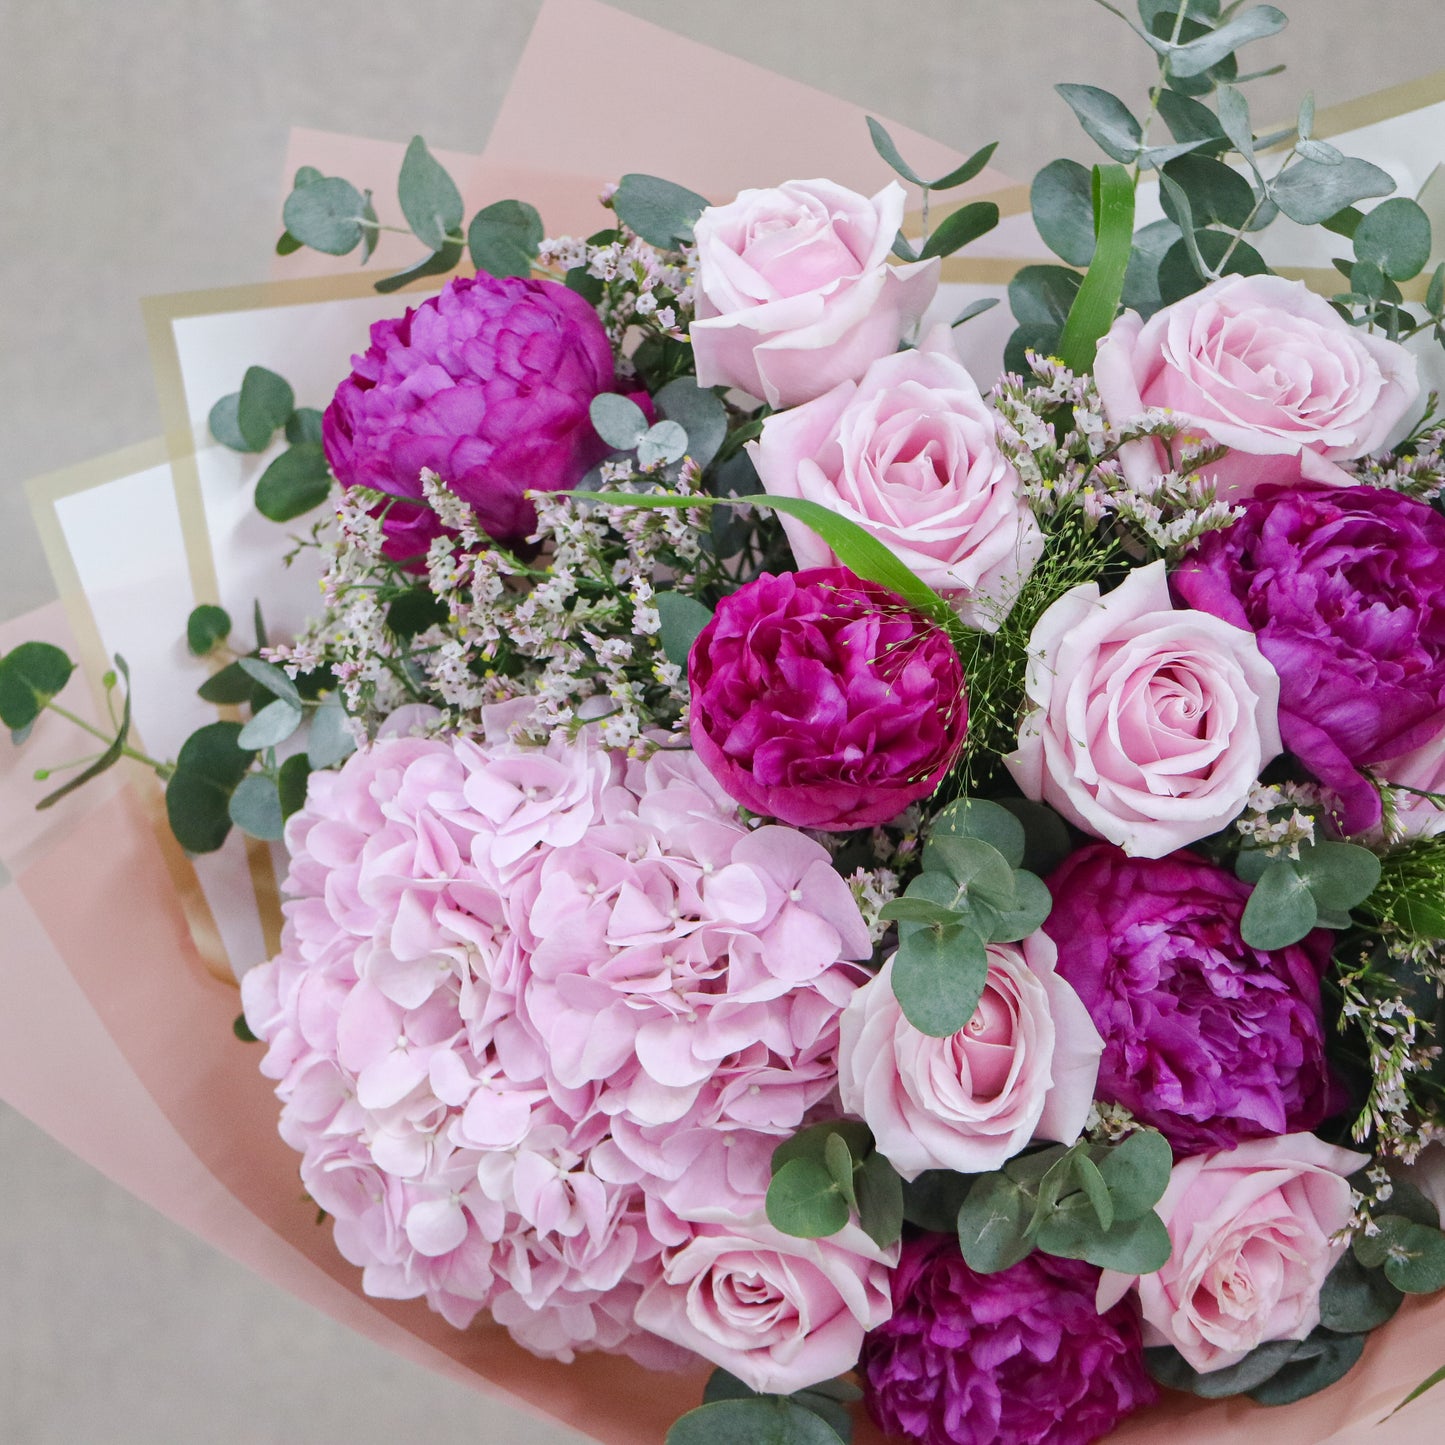 粉白桔梗日射花束 Pink white eustoma and stock bouquet